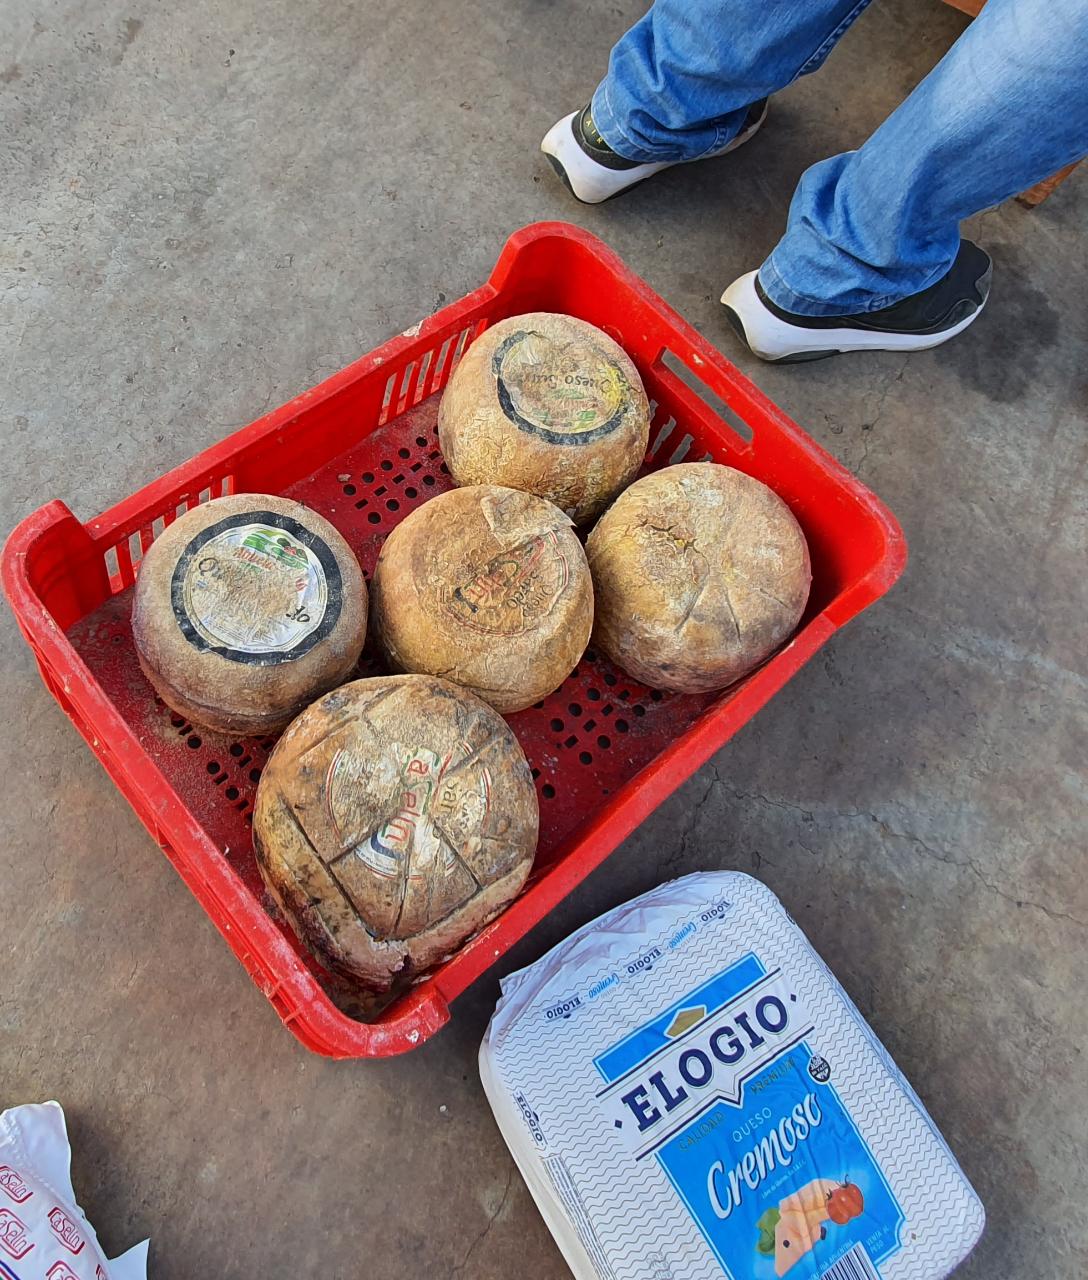 El allanamiento fue realizado por una comitiva fiscal policial en una distribuidora de quesos en Fernando de la Mora. Foto: Ministerio Público